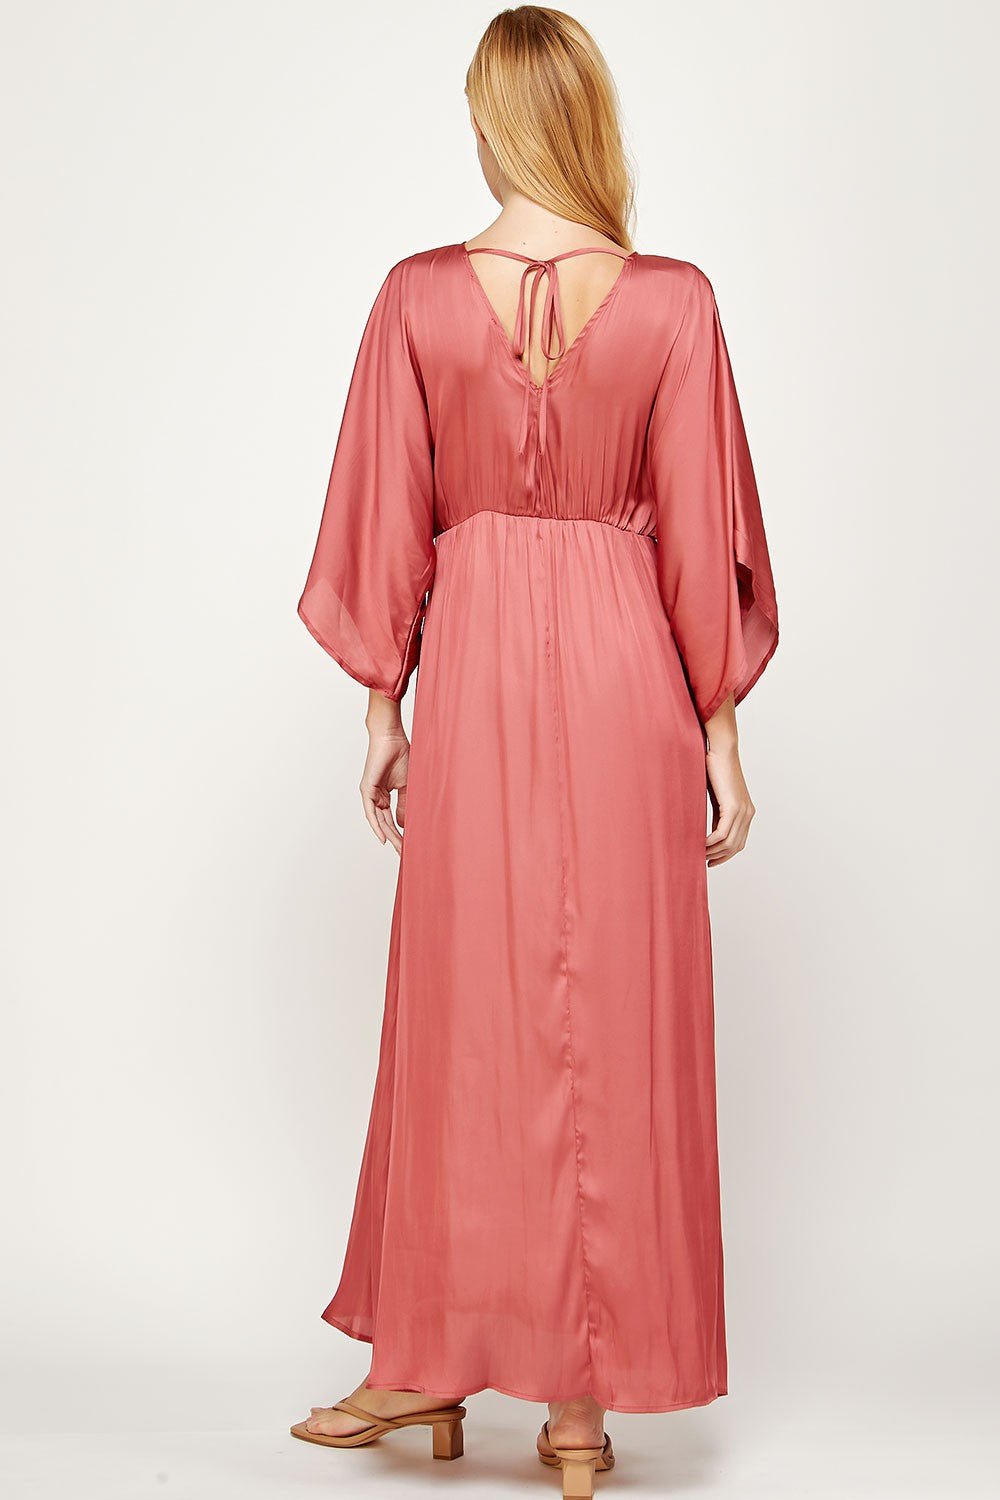 Columba - rosa - Lend the Trend renta de vestidos mexico